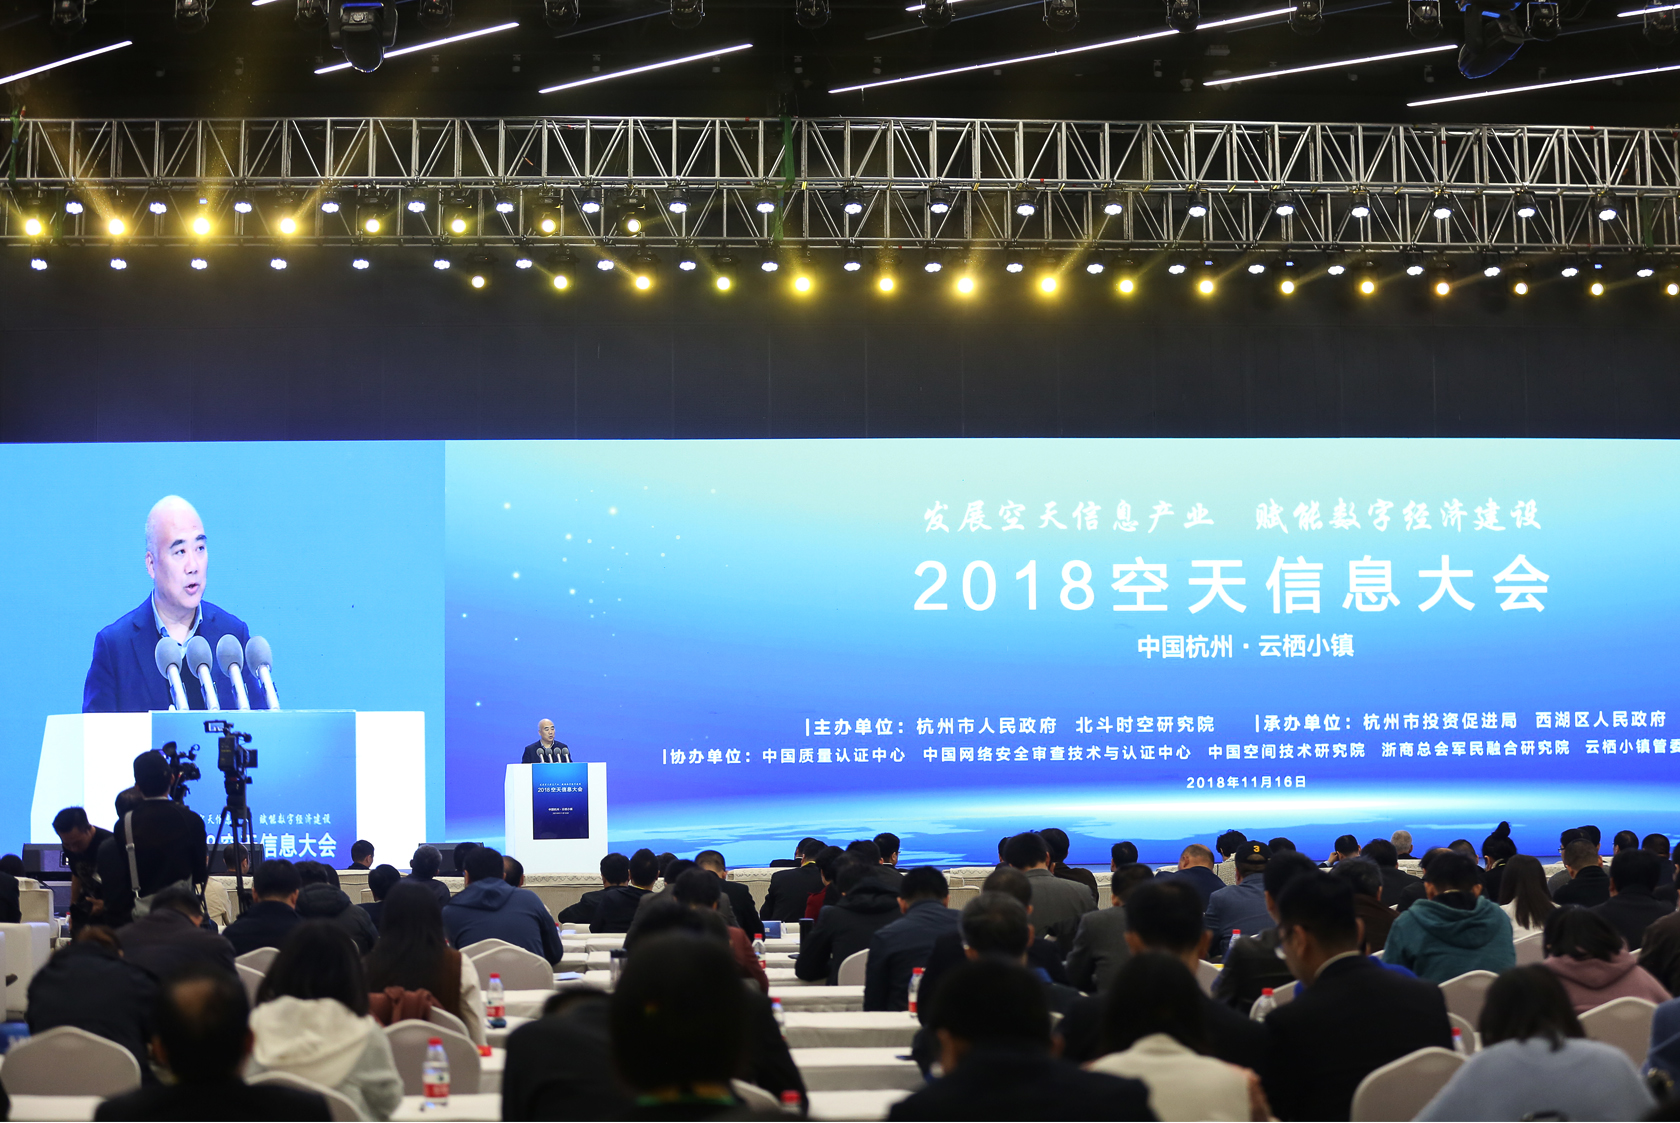 2018空天信息大会 杭州市政府主办行业论坛会议-0